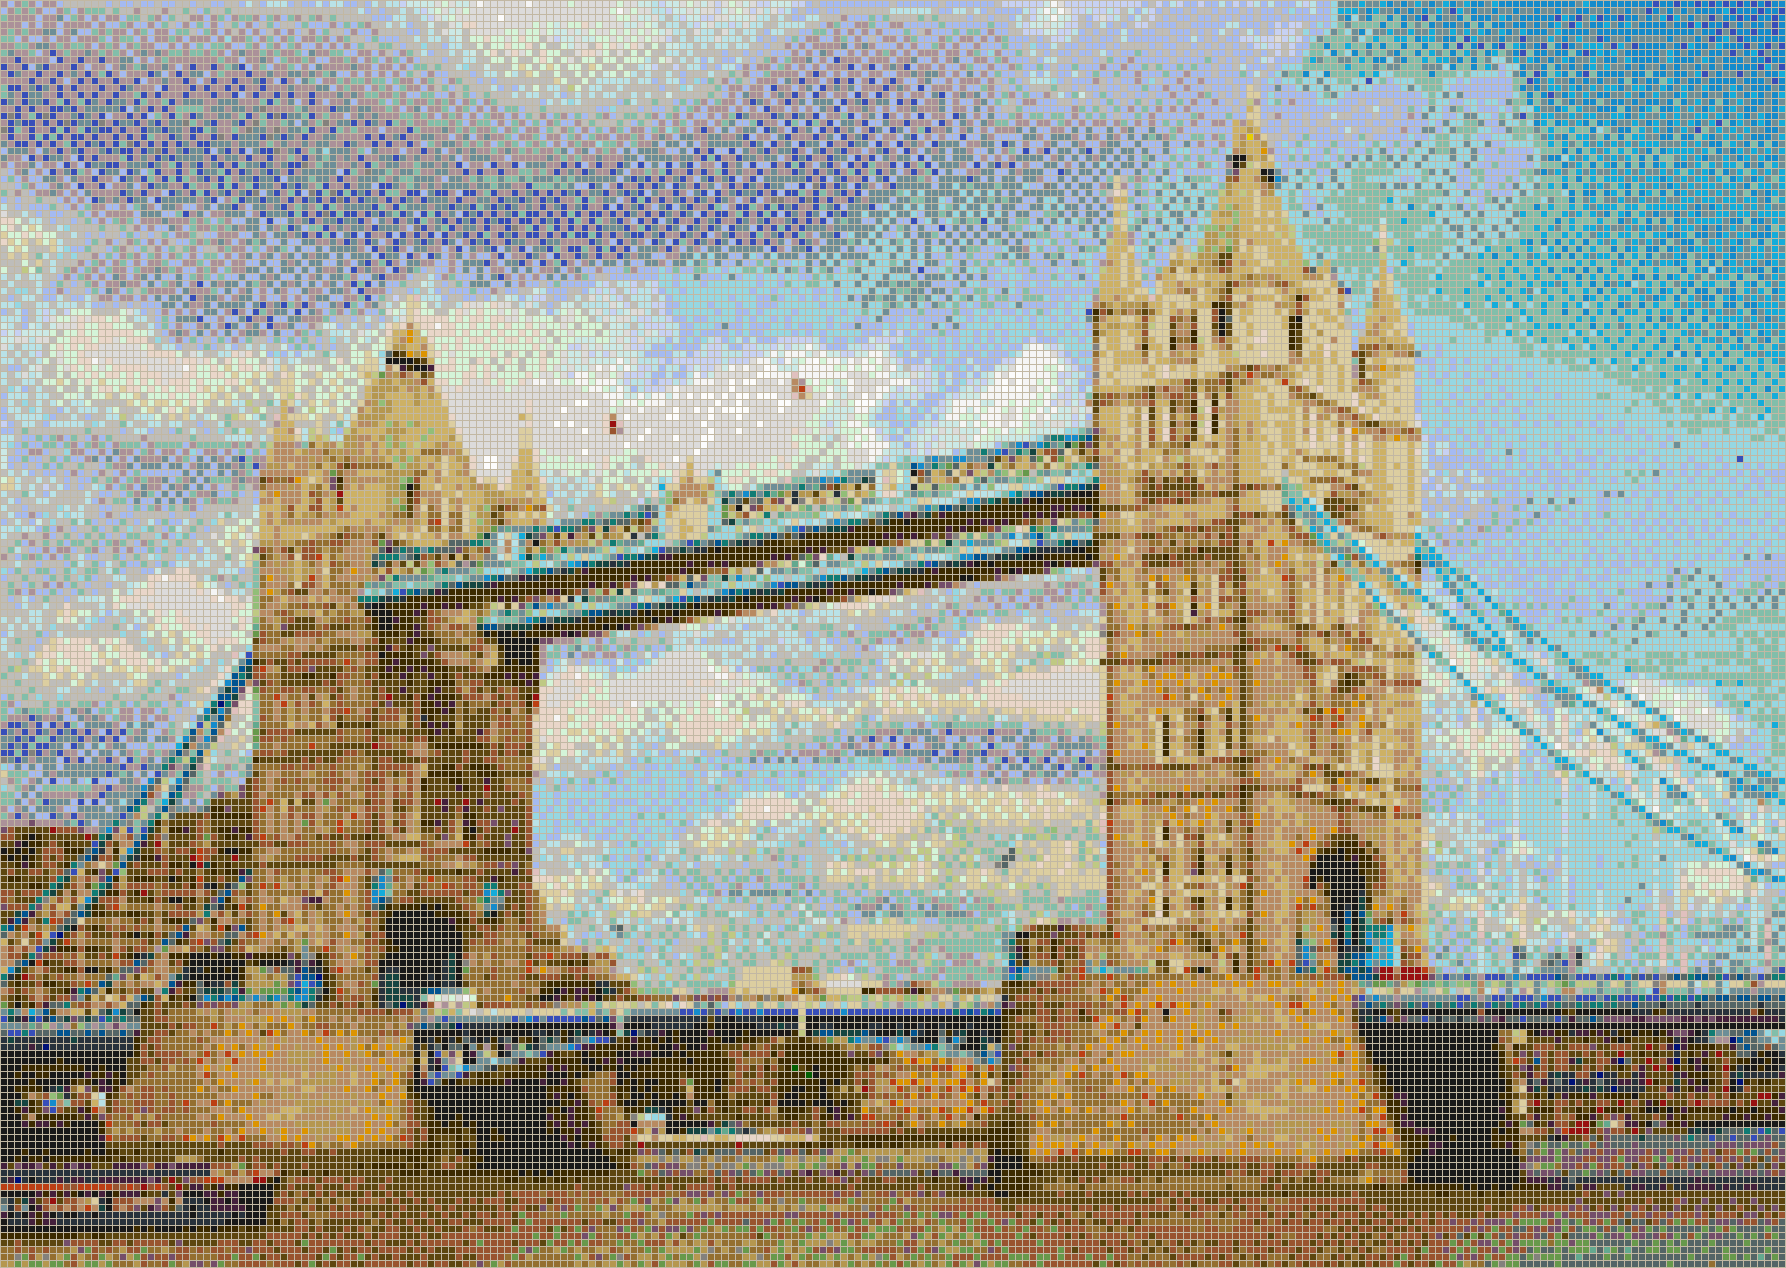 Tower Bridge - Mosaic Tile Picture Art